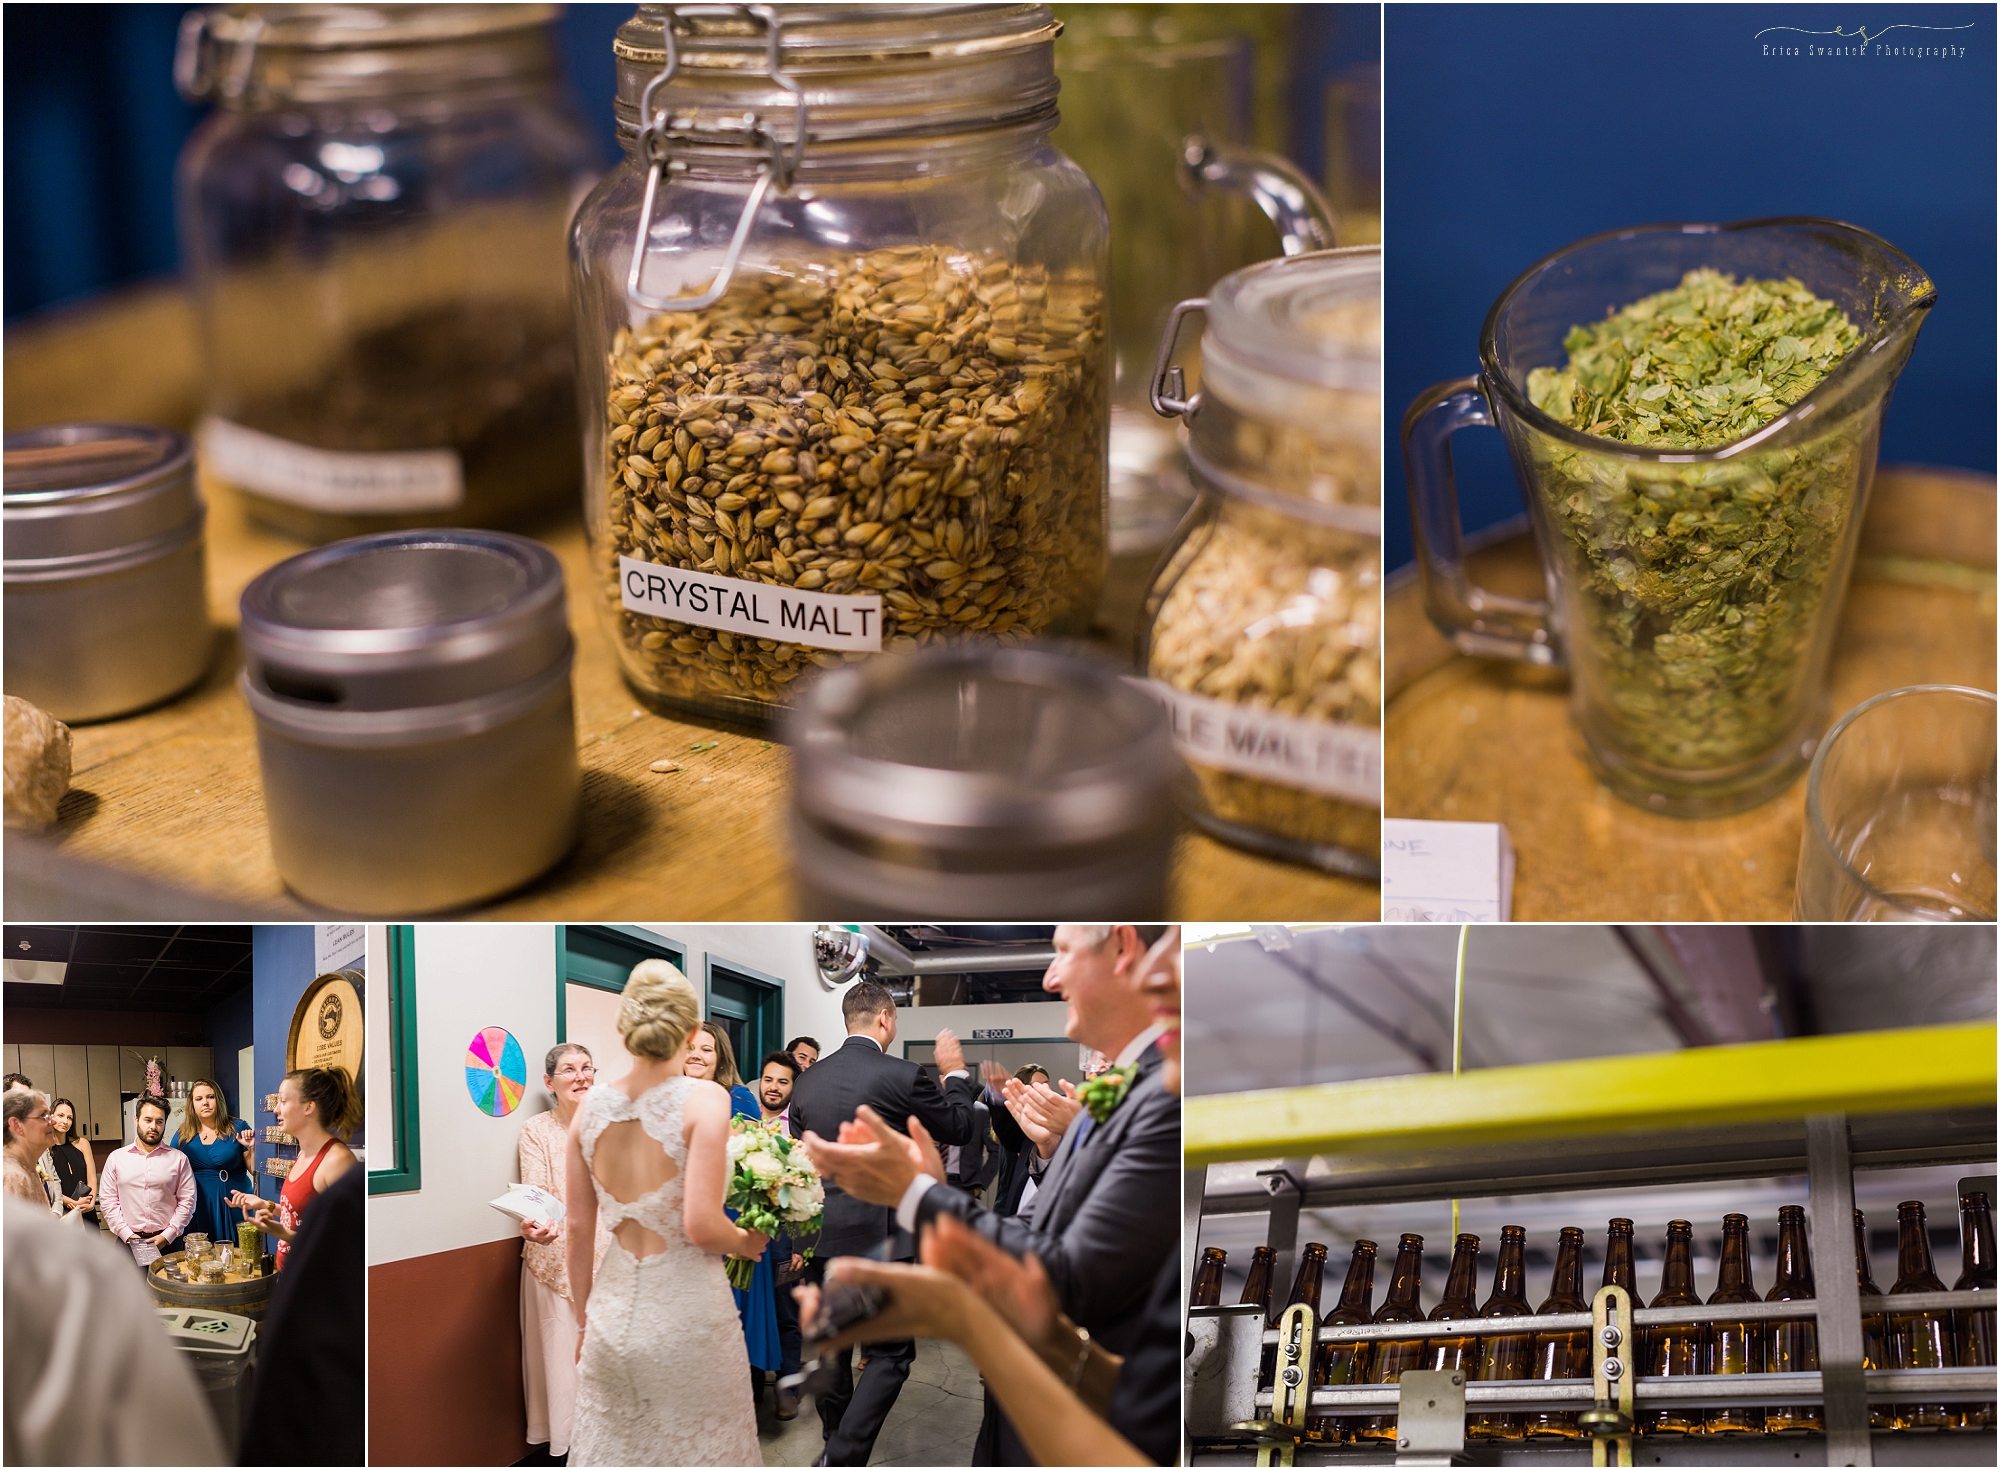 Deschutes Brewery Wedding brewing tour. | Erica Swantek Photography